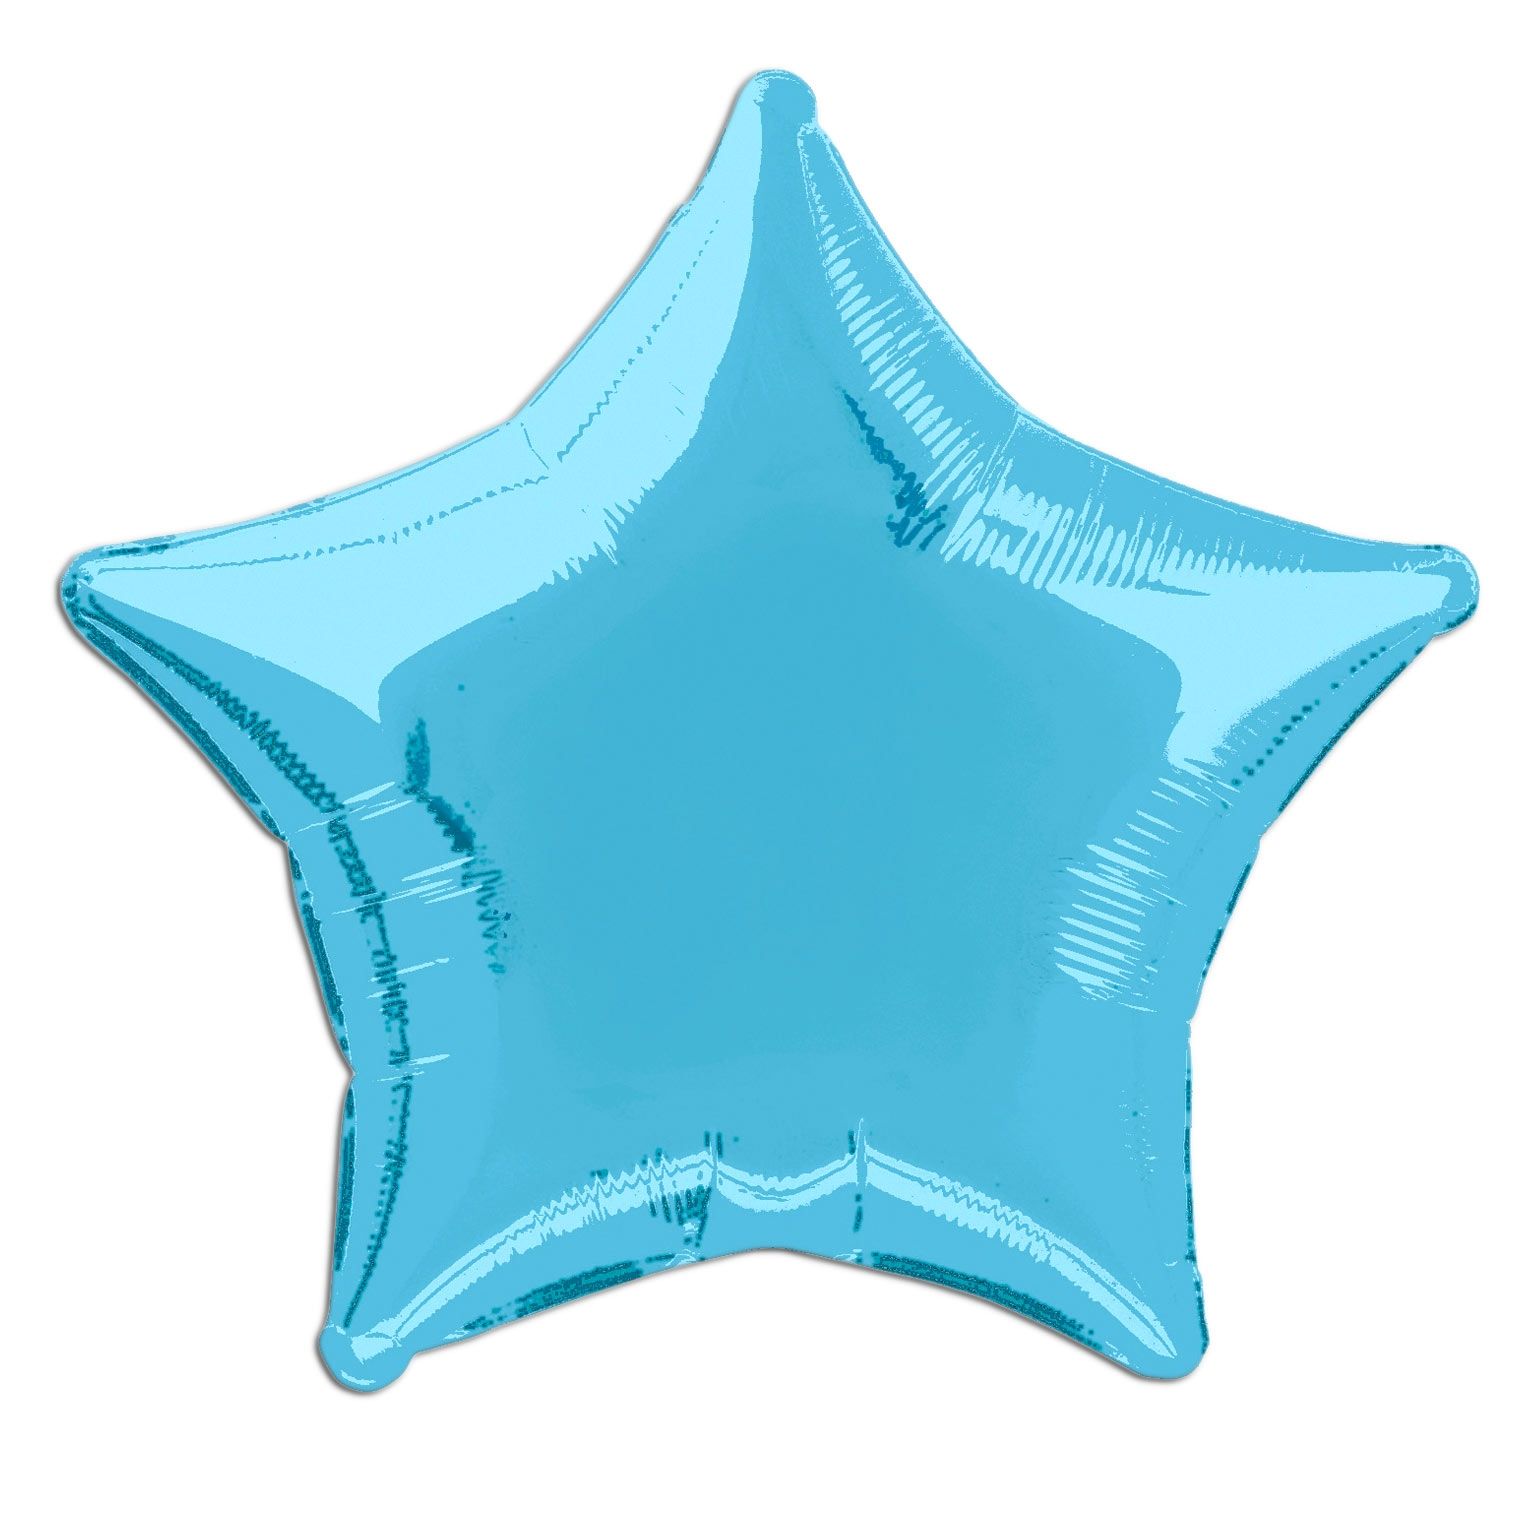 Folienballon blau als Stern 45 cm, einfarbig, ideal zum Beschriften